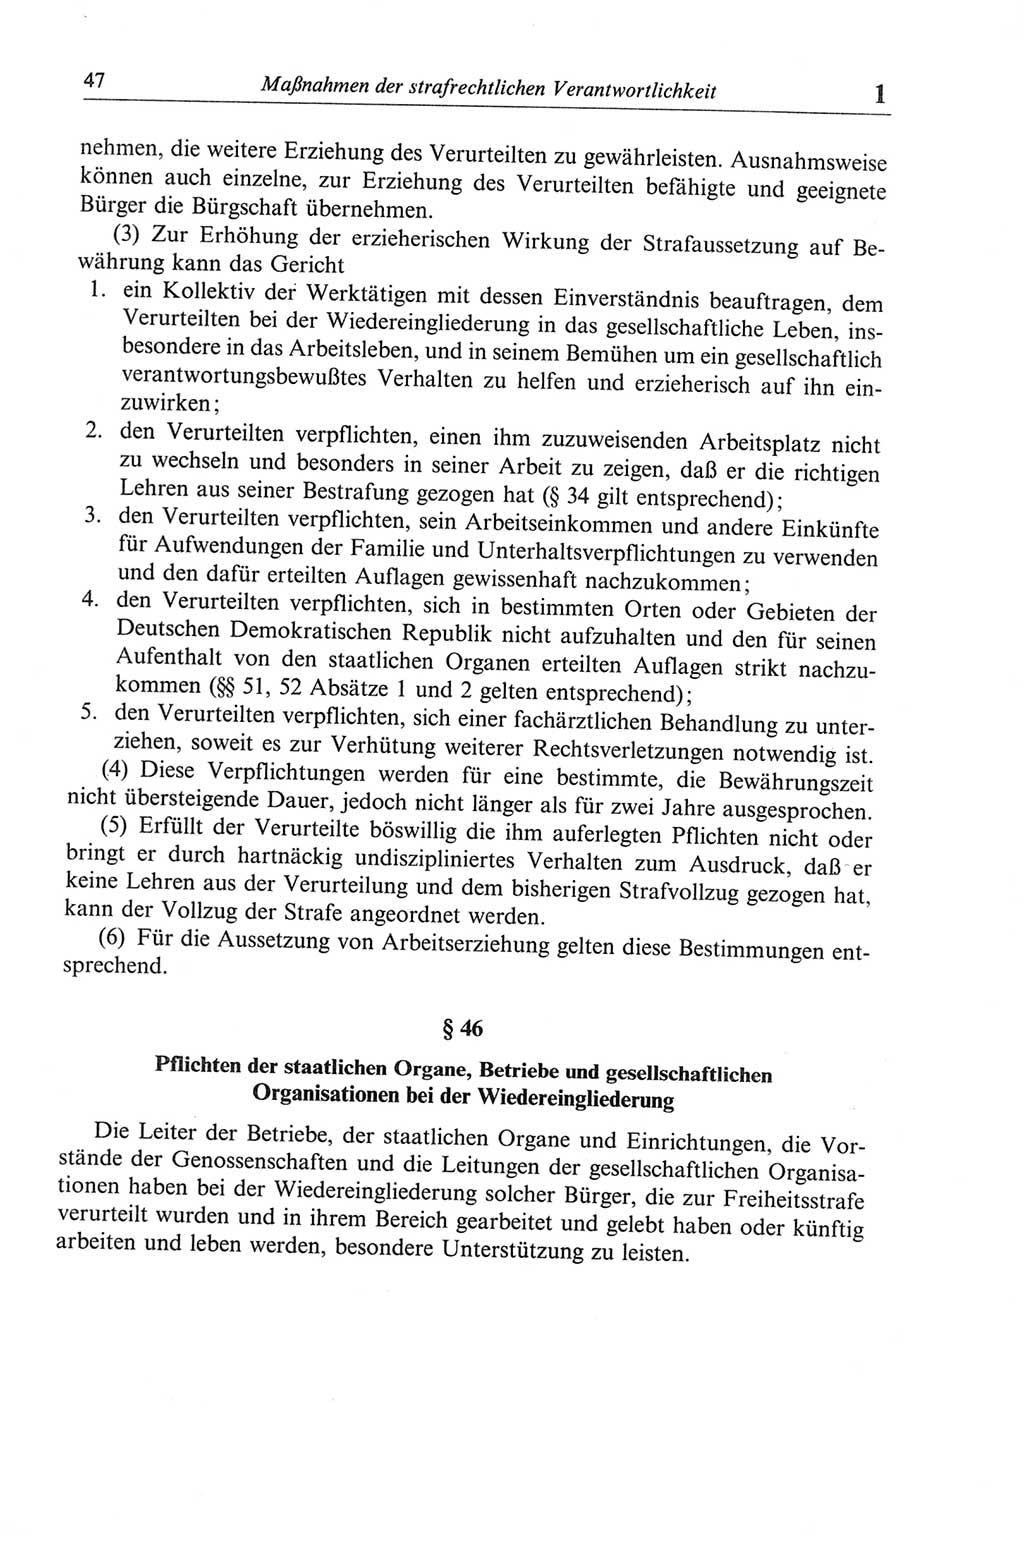 Strafgesetzbuch (StGB) der Deutschen Demokratischen Republik (DDR) und angrenzende Gesetze und Bestimmungen 1968, Seite 47 (StGB Ges. Best. DDR 1968, S. 47)